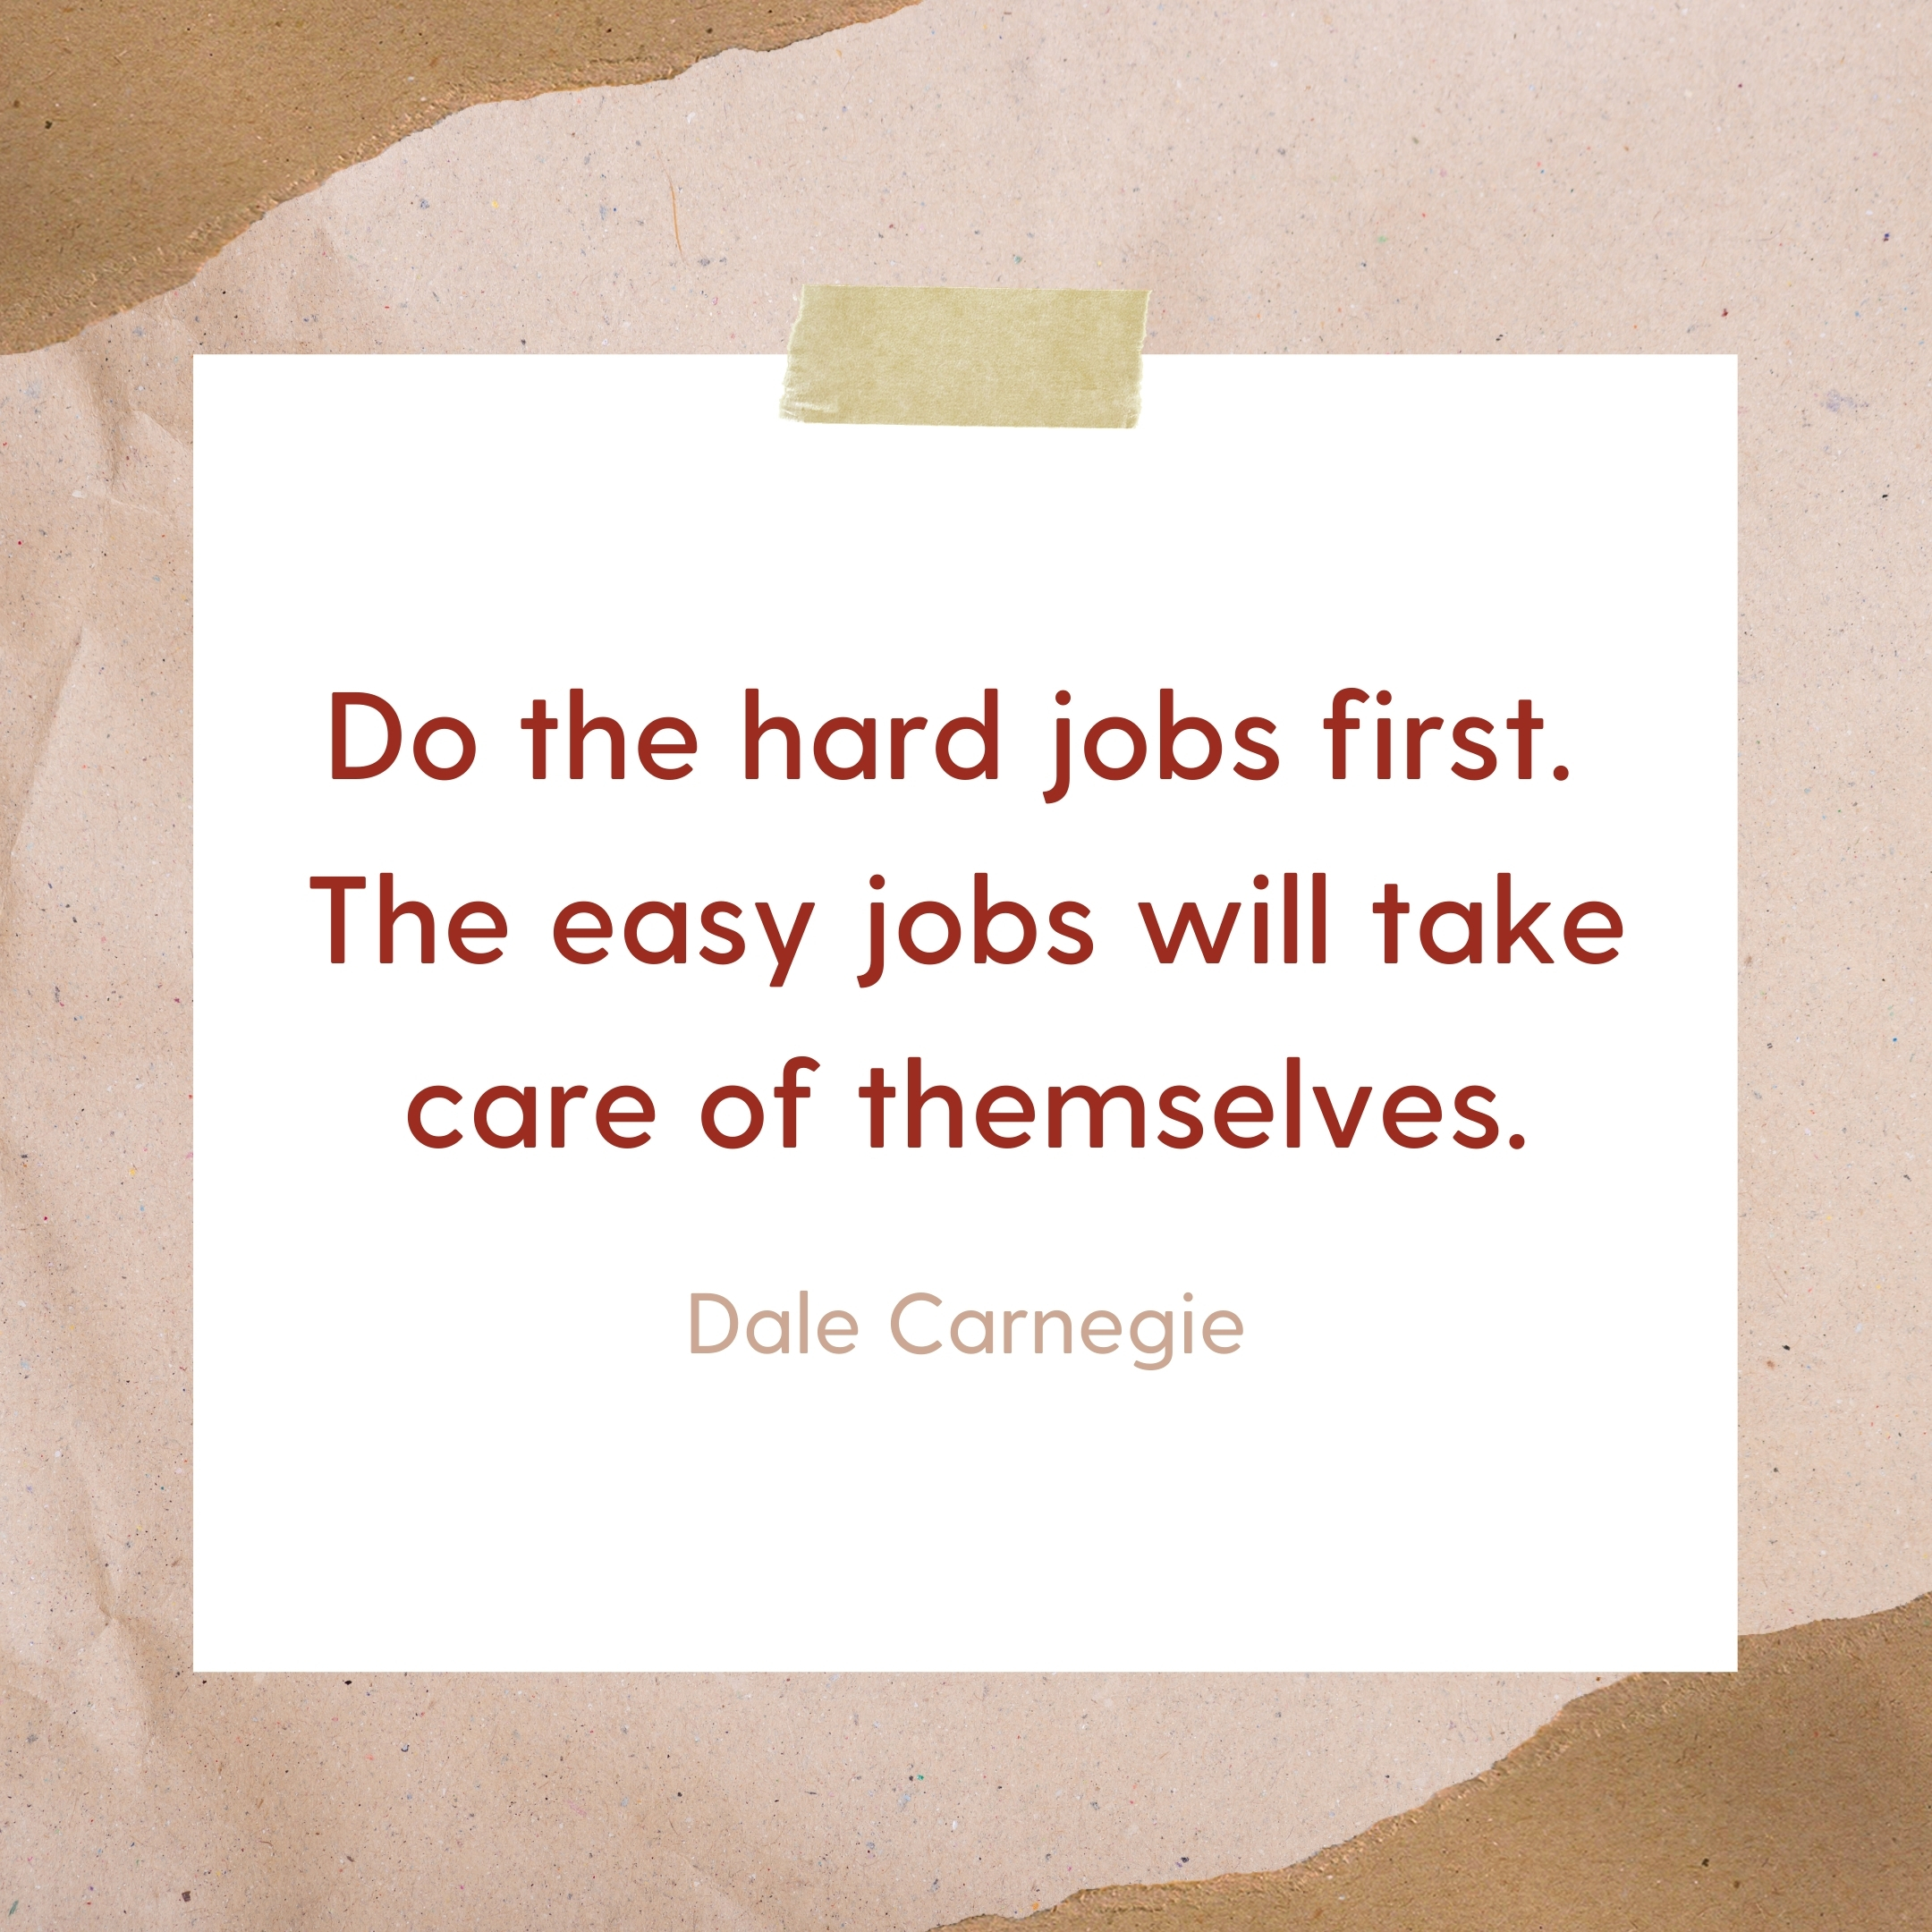 Dale Carnegie Monday Motivation Quotes